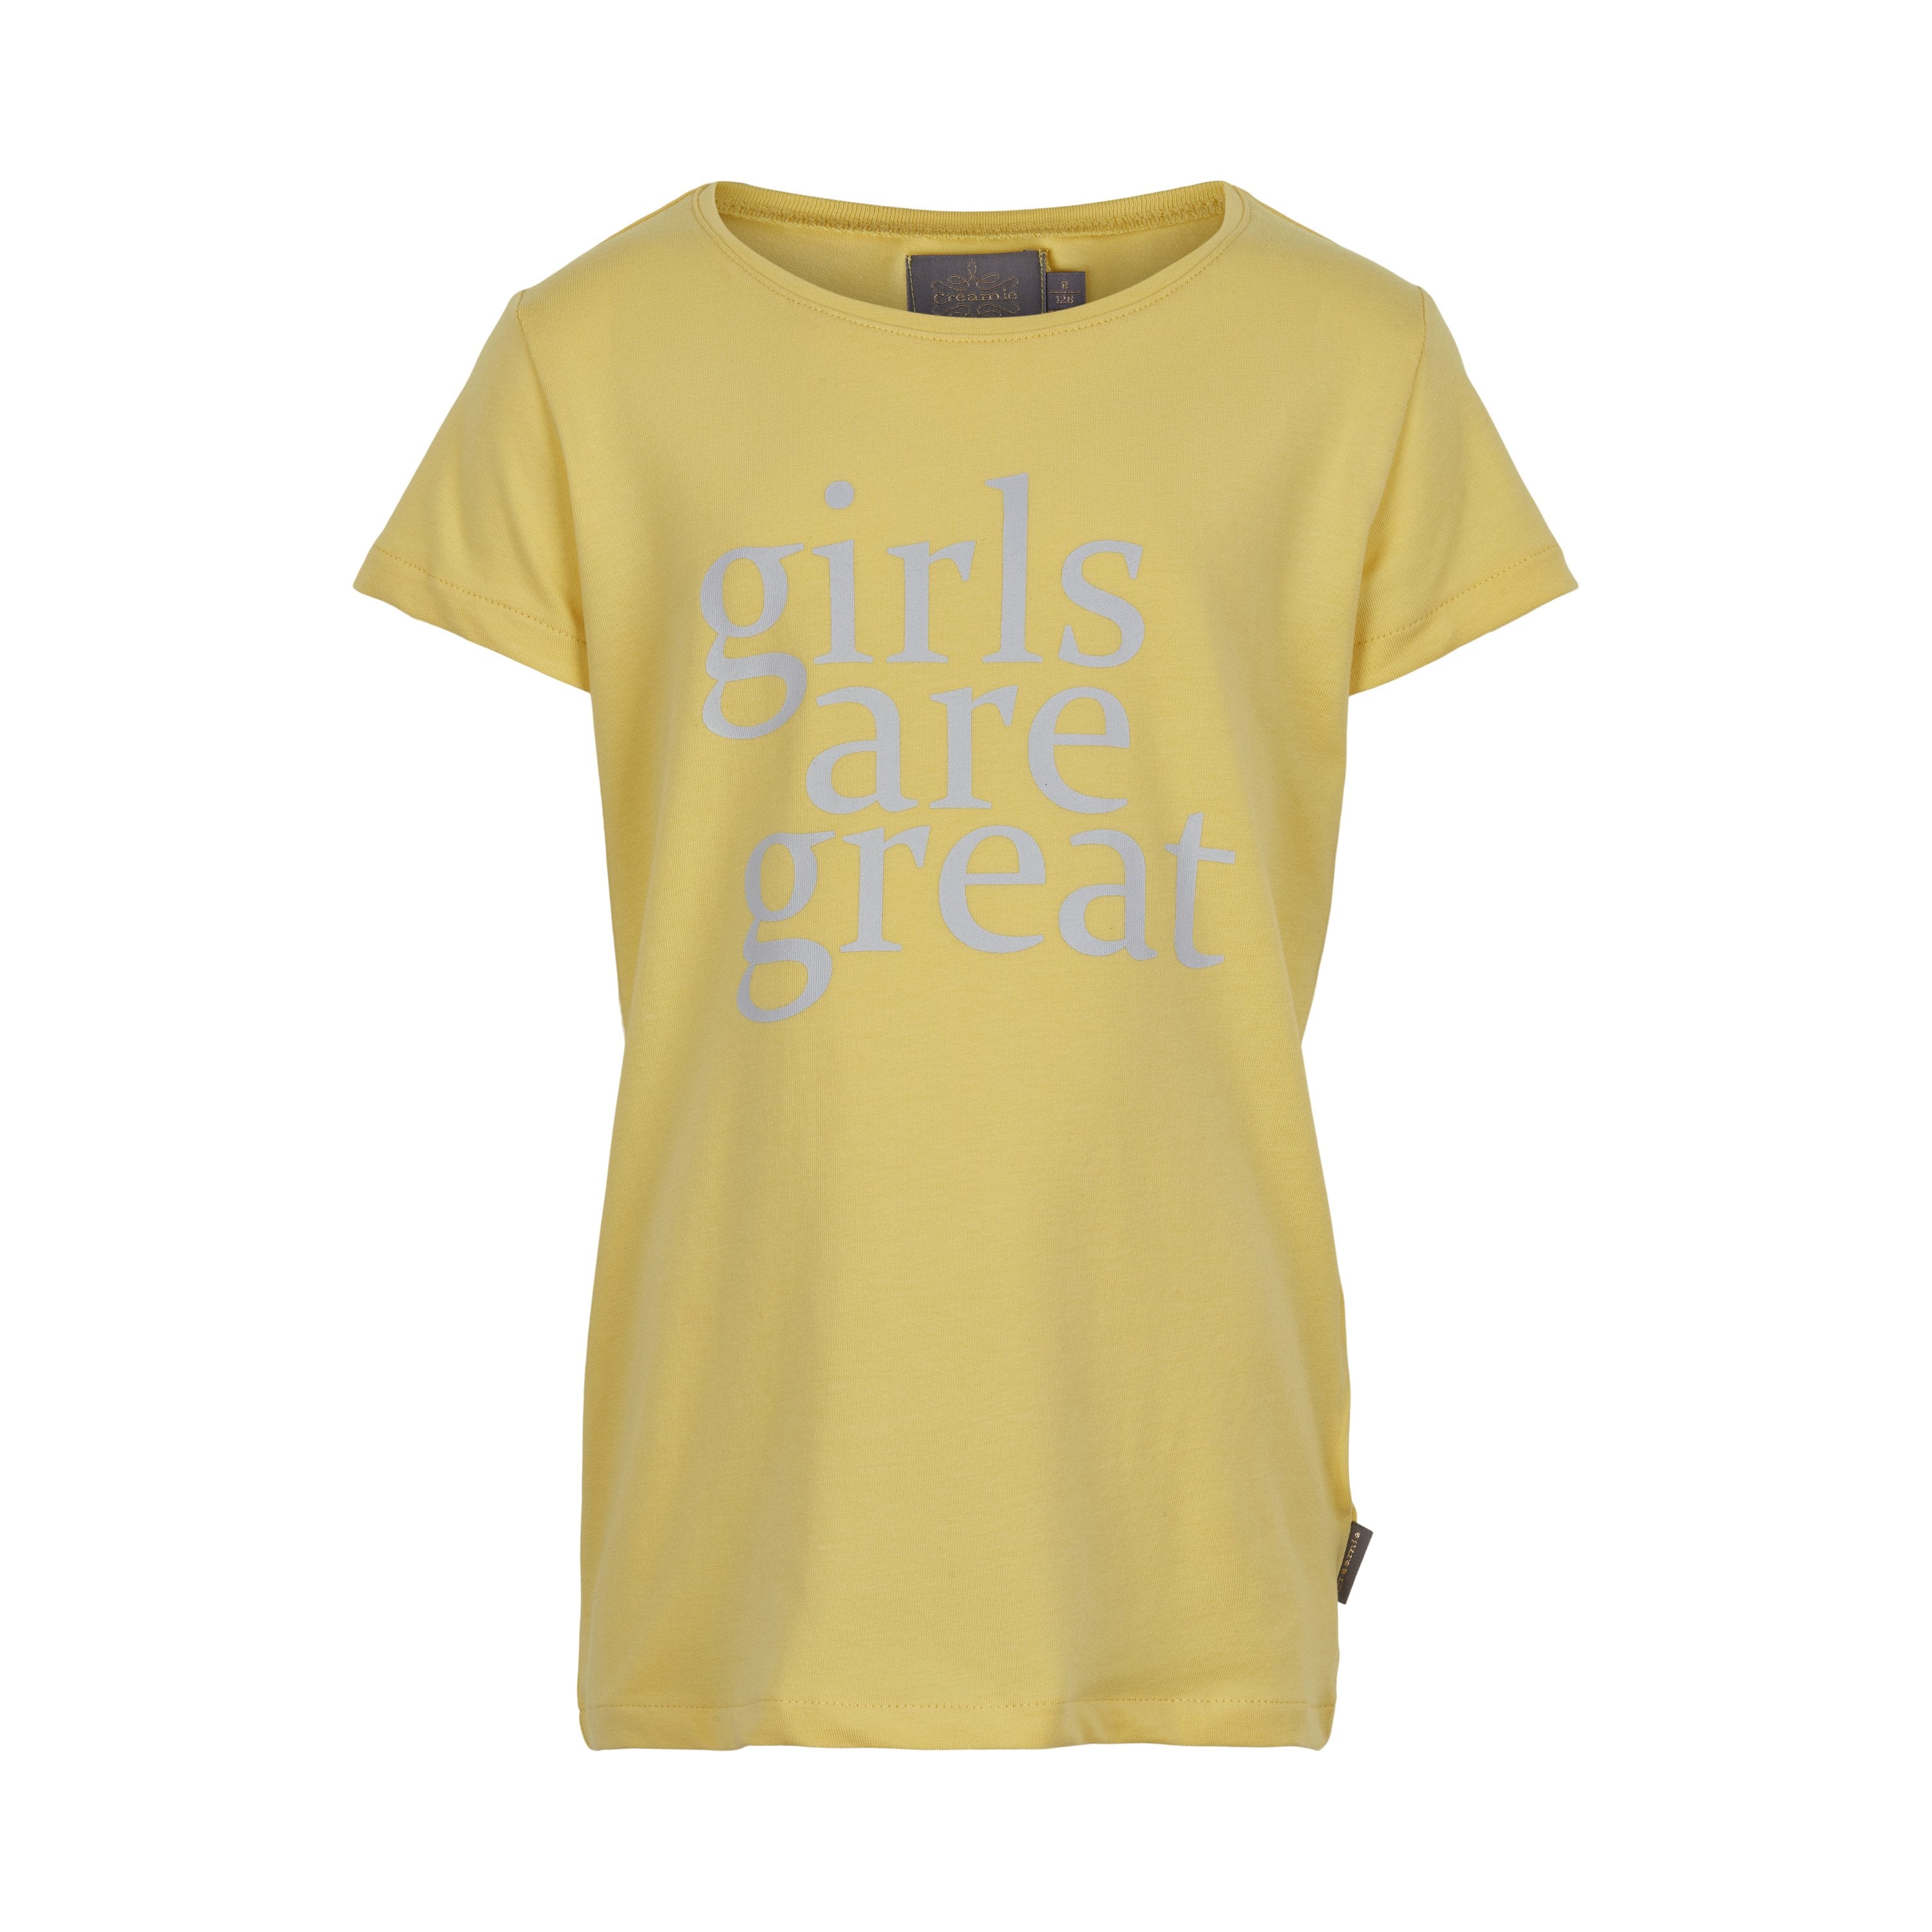 Meisjes T-shirt Text Girls are great van Creamie in de kleur Sundress in maat 152.